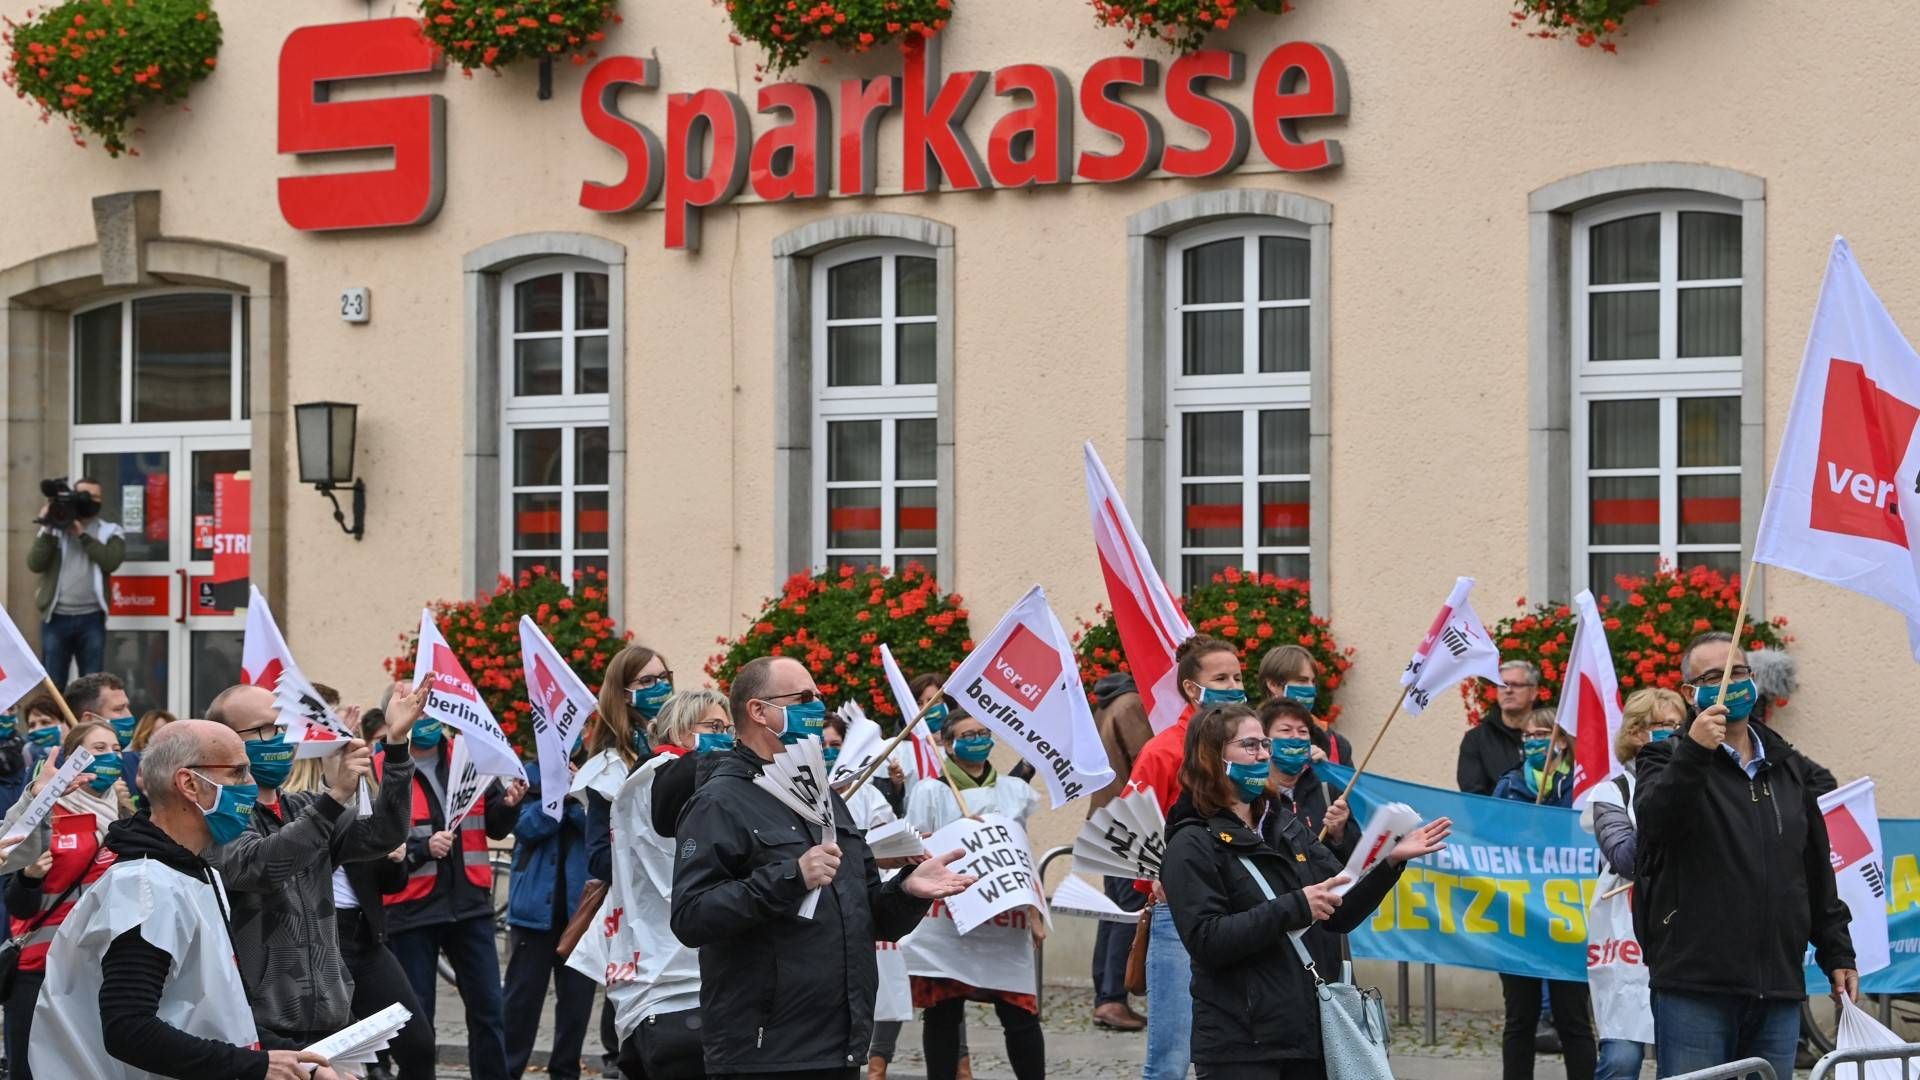 Teilnehmer der Zentralen Kundgebung im Warnstreik der Sparkassen stehen vor dem Gebäude der Sparkasse Märkisch-Oderland | Foto: picture alliance/Patrick Pleul/dpa-Zentralbild/ZB